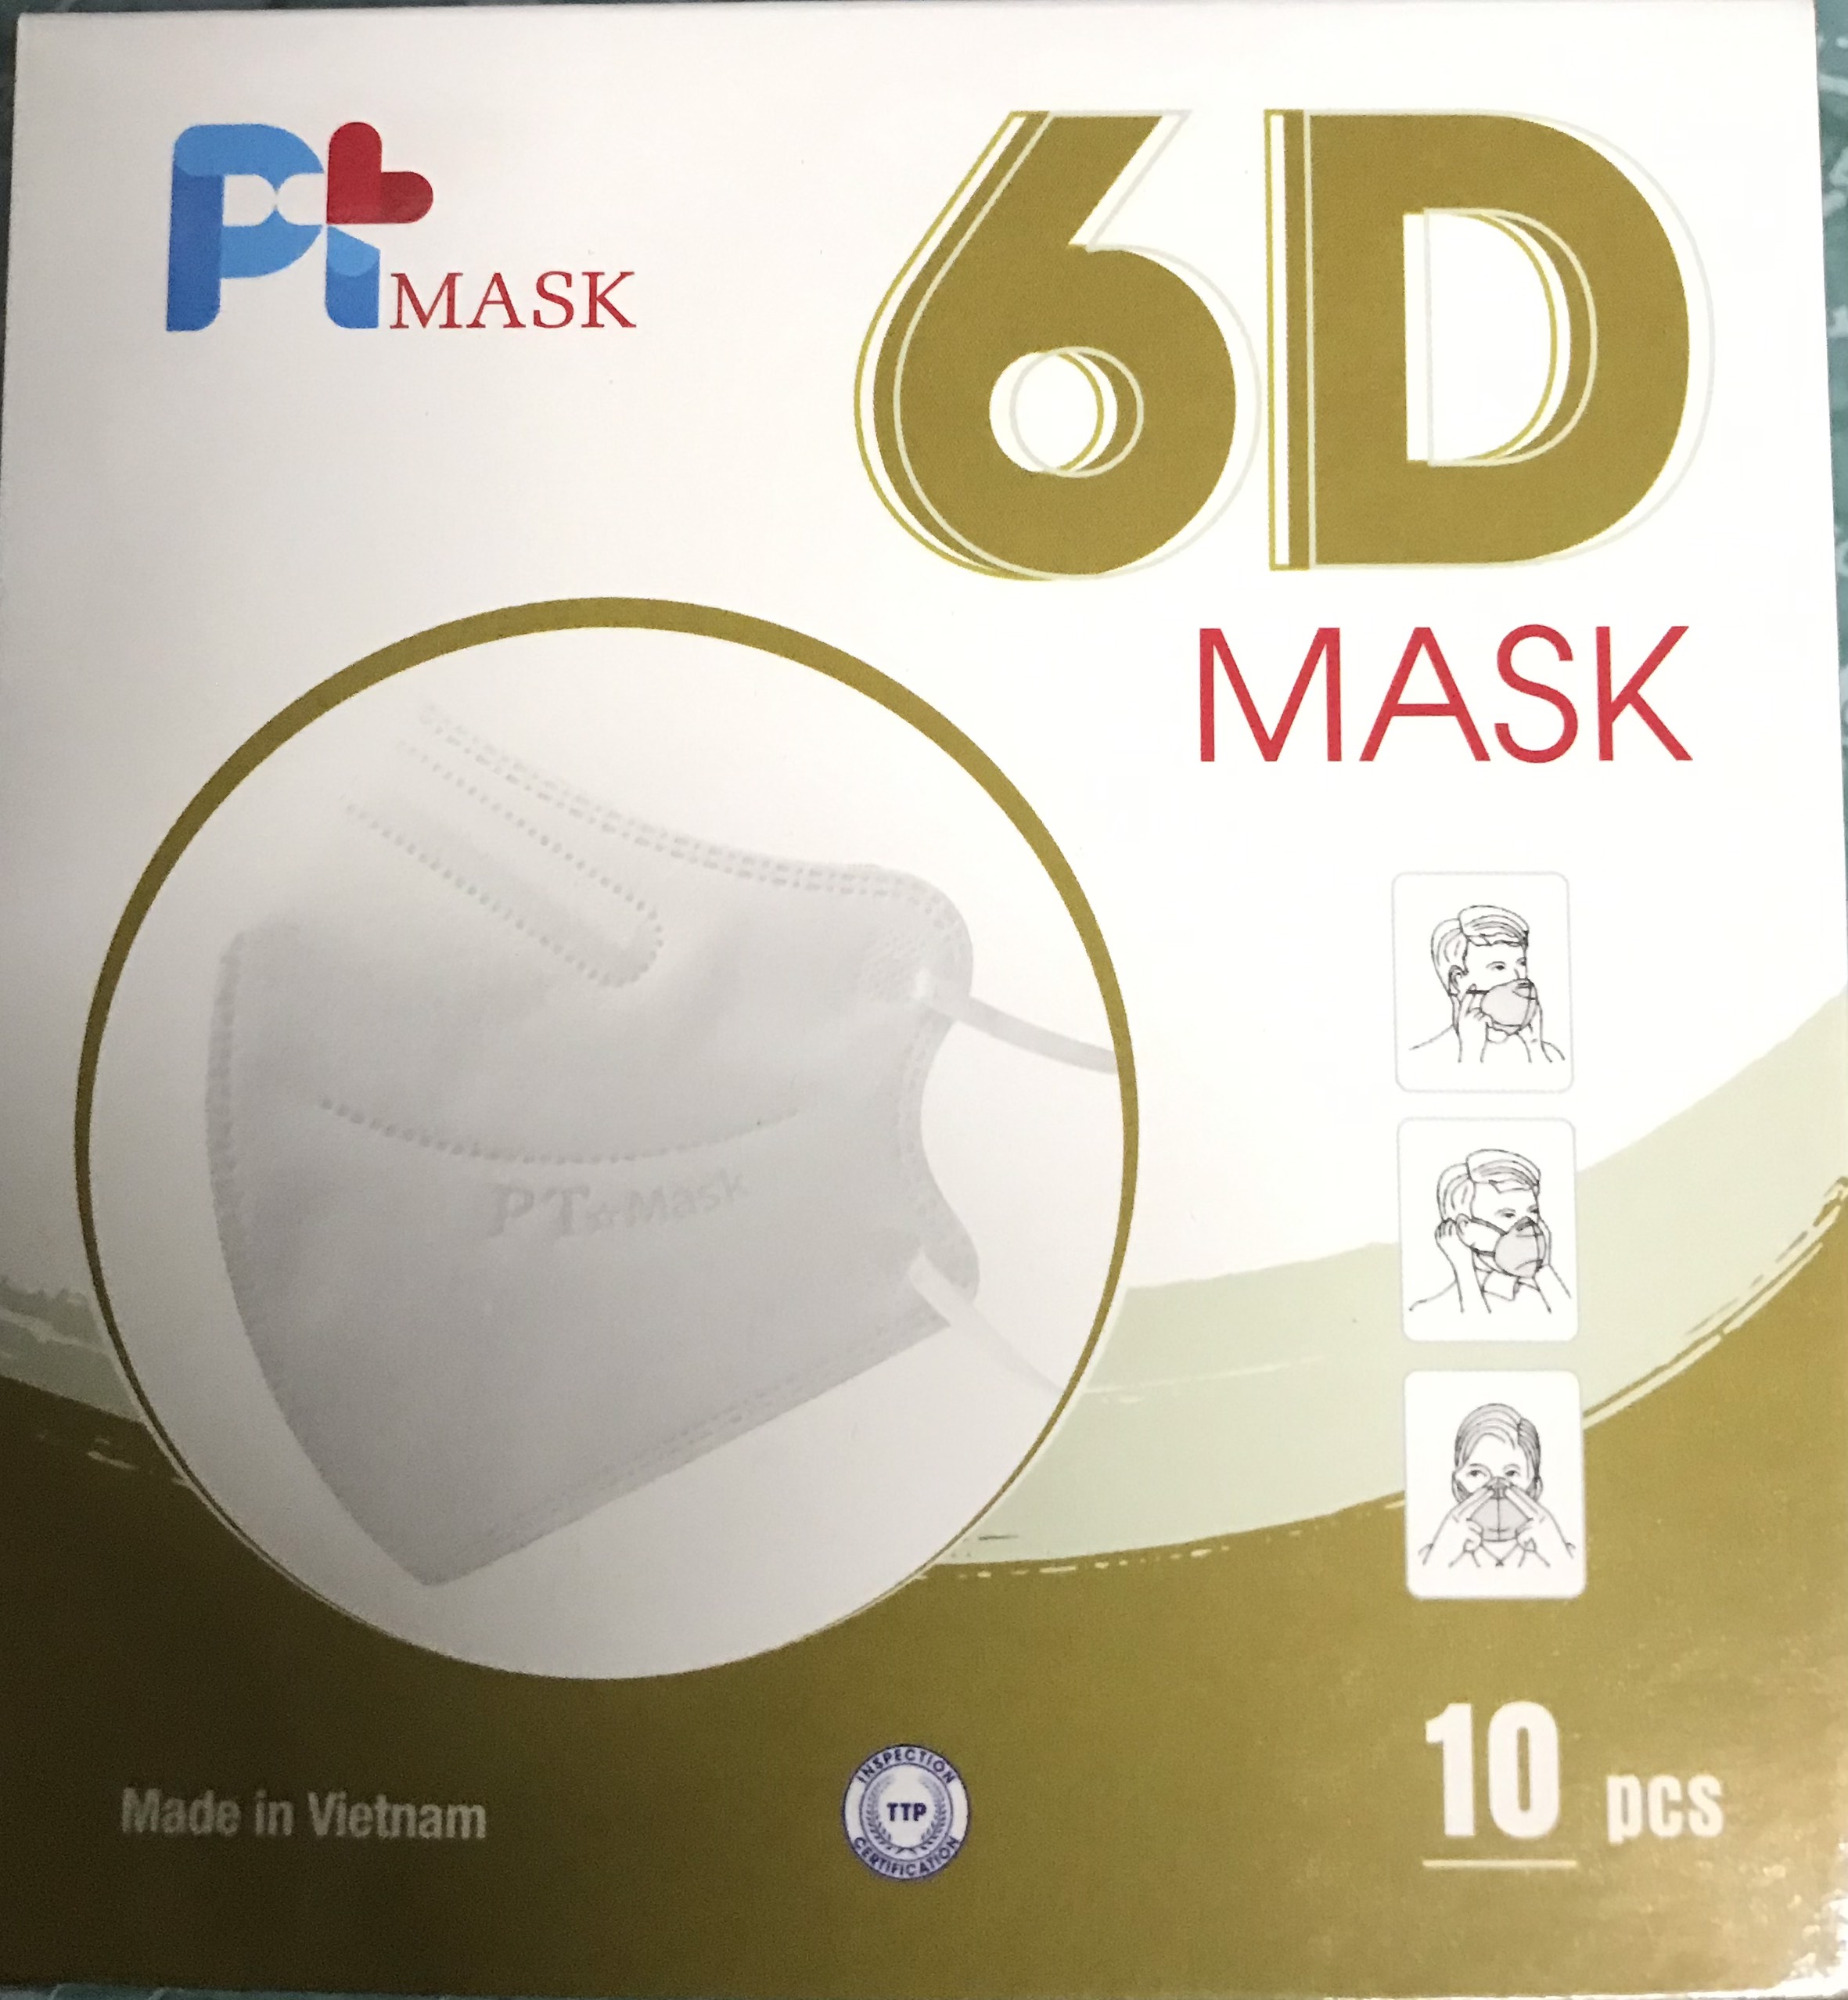 Hộp 10 Cái Khẩu Trang VNN95 PT Mask, 5 Lớp, Kháng Khuẩn, Chống Bụi Siêu Mịn PM2.5, Màu Trắng - Đạt Các Chứng Chỉ ISO 13485, ISO 9001, CE, FDA, TGA.